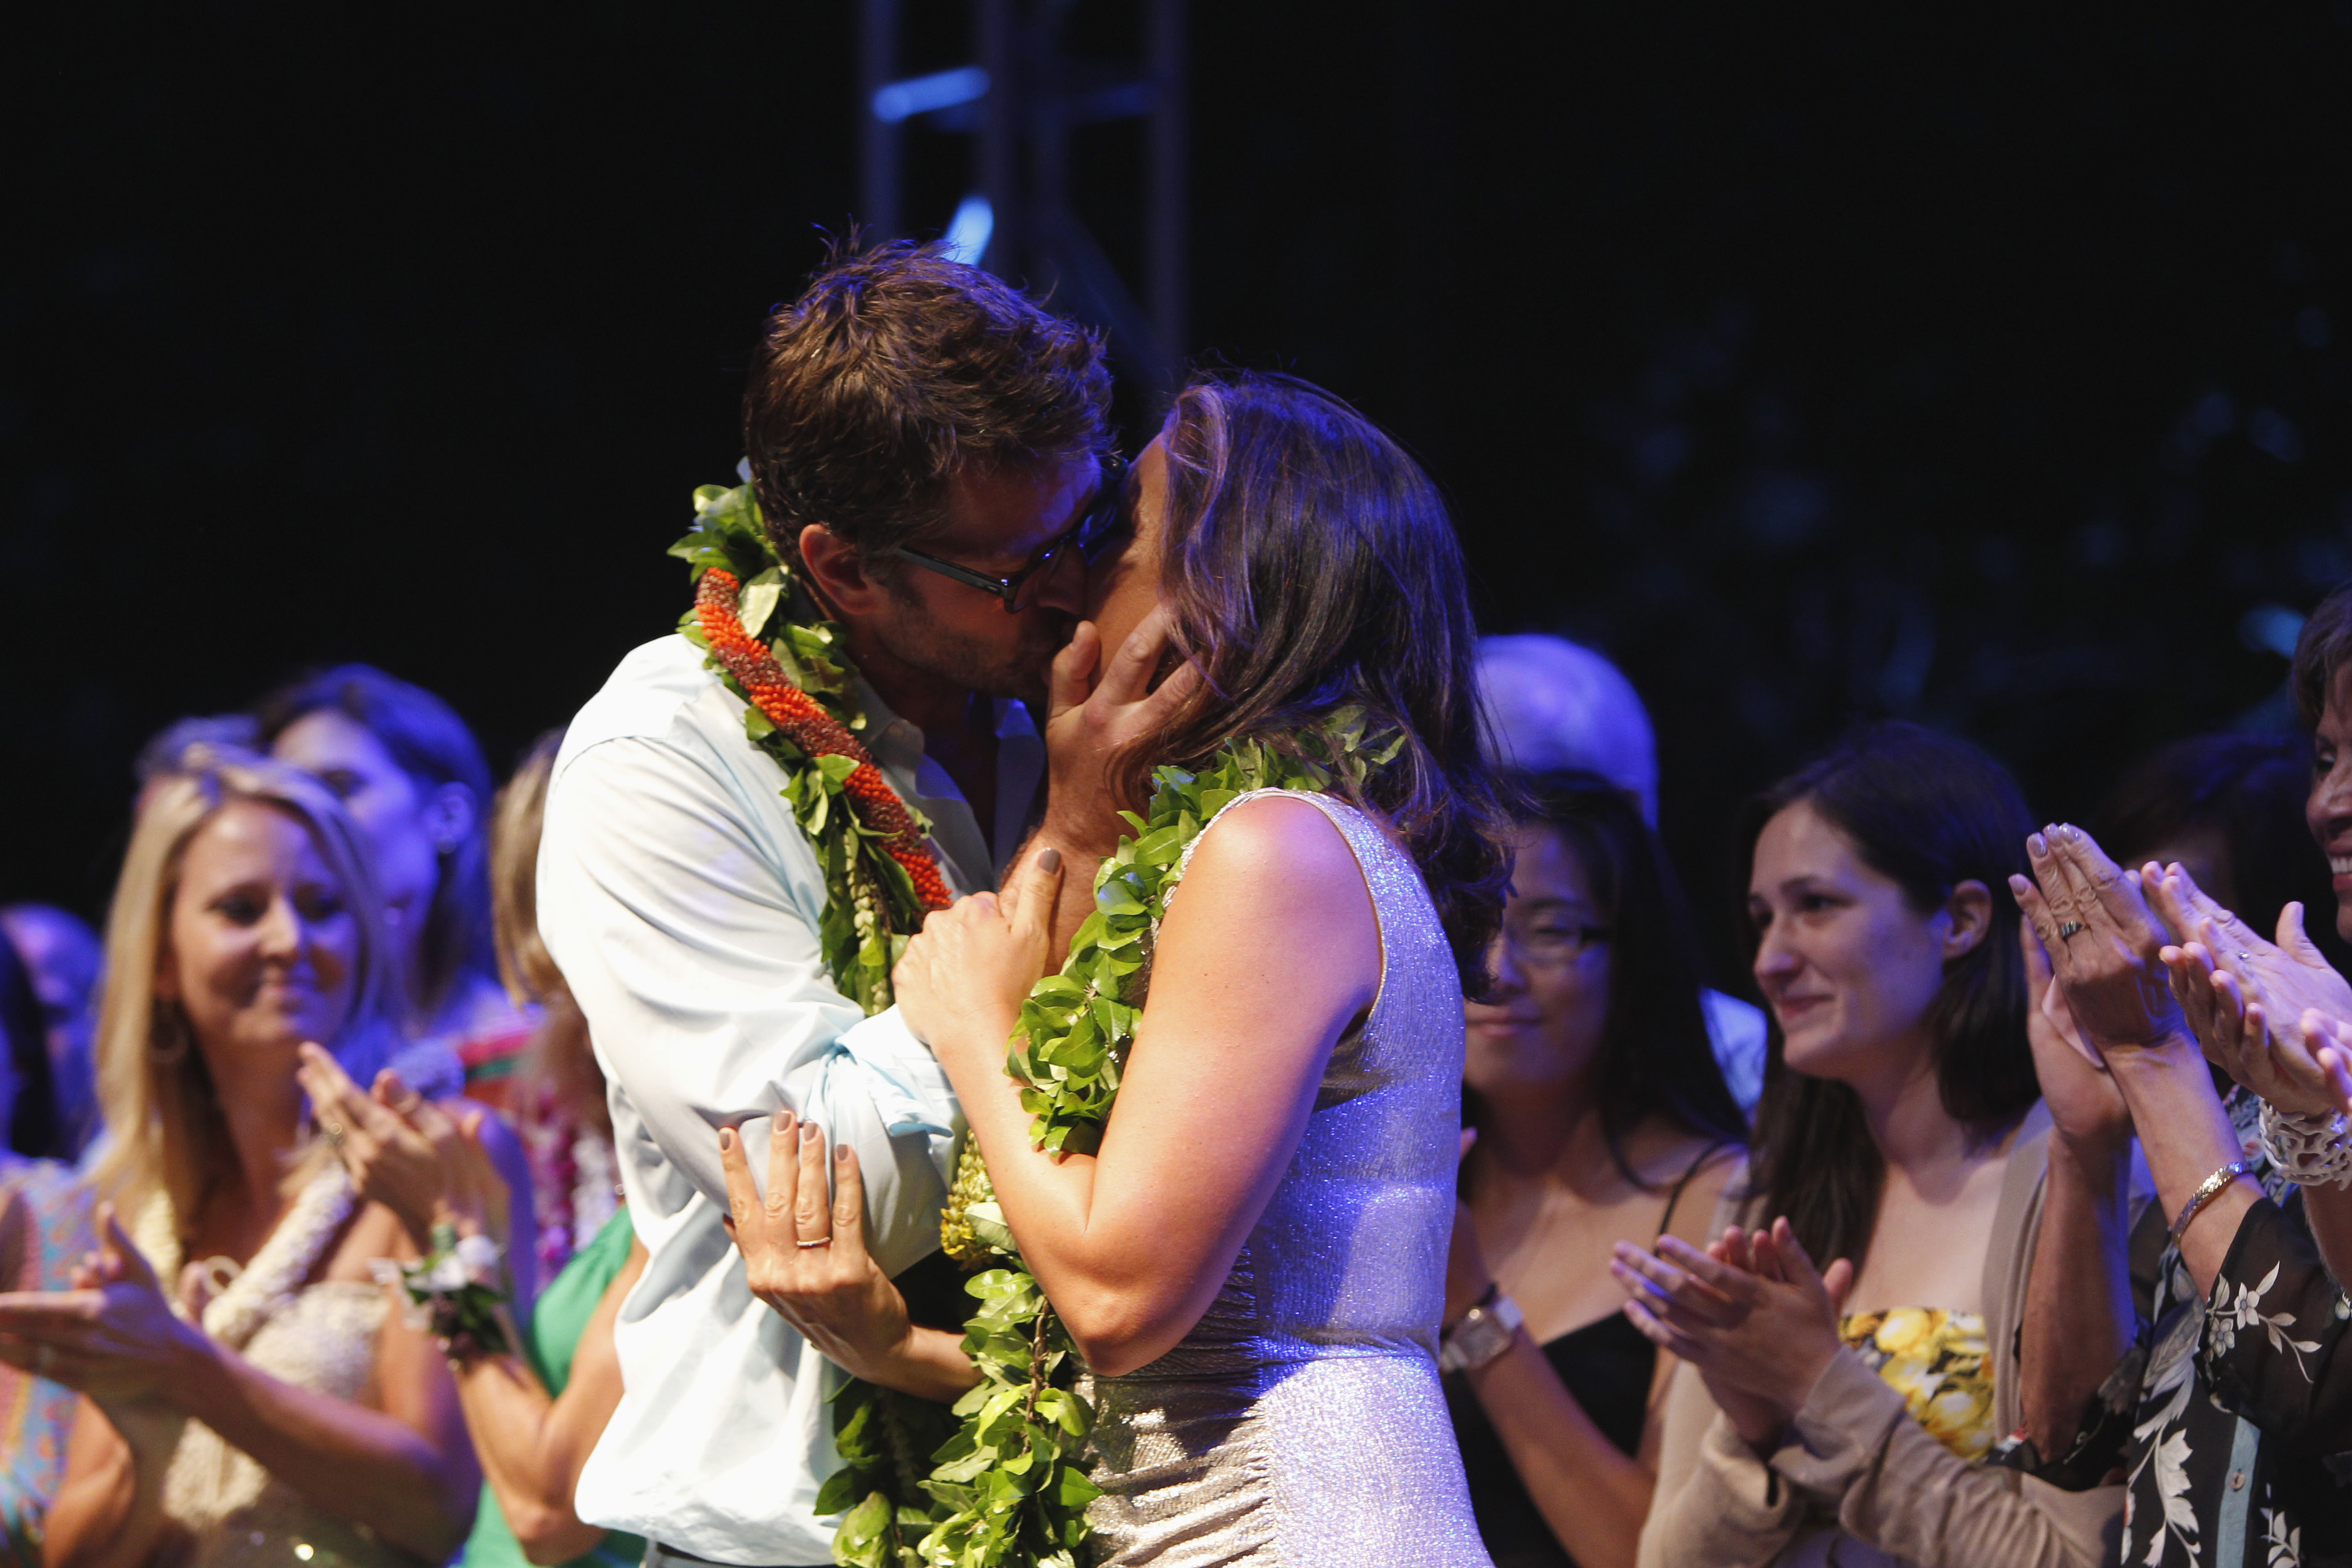 Peter Hermann and Mariska Hargitay sharing a kiss at The Inaugural Joyful Mele Gala in Honolulu, 2012 | Source: Getty Images